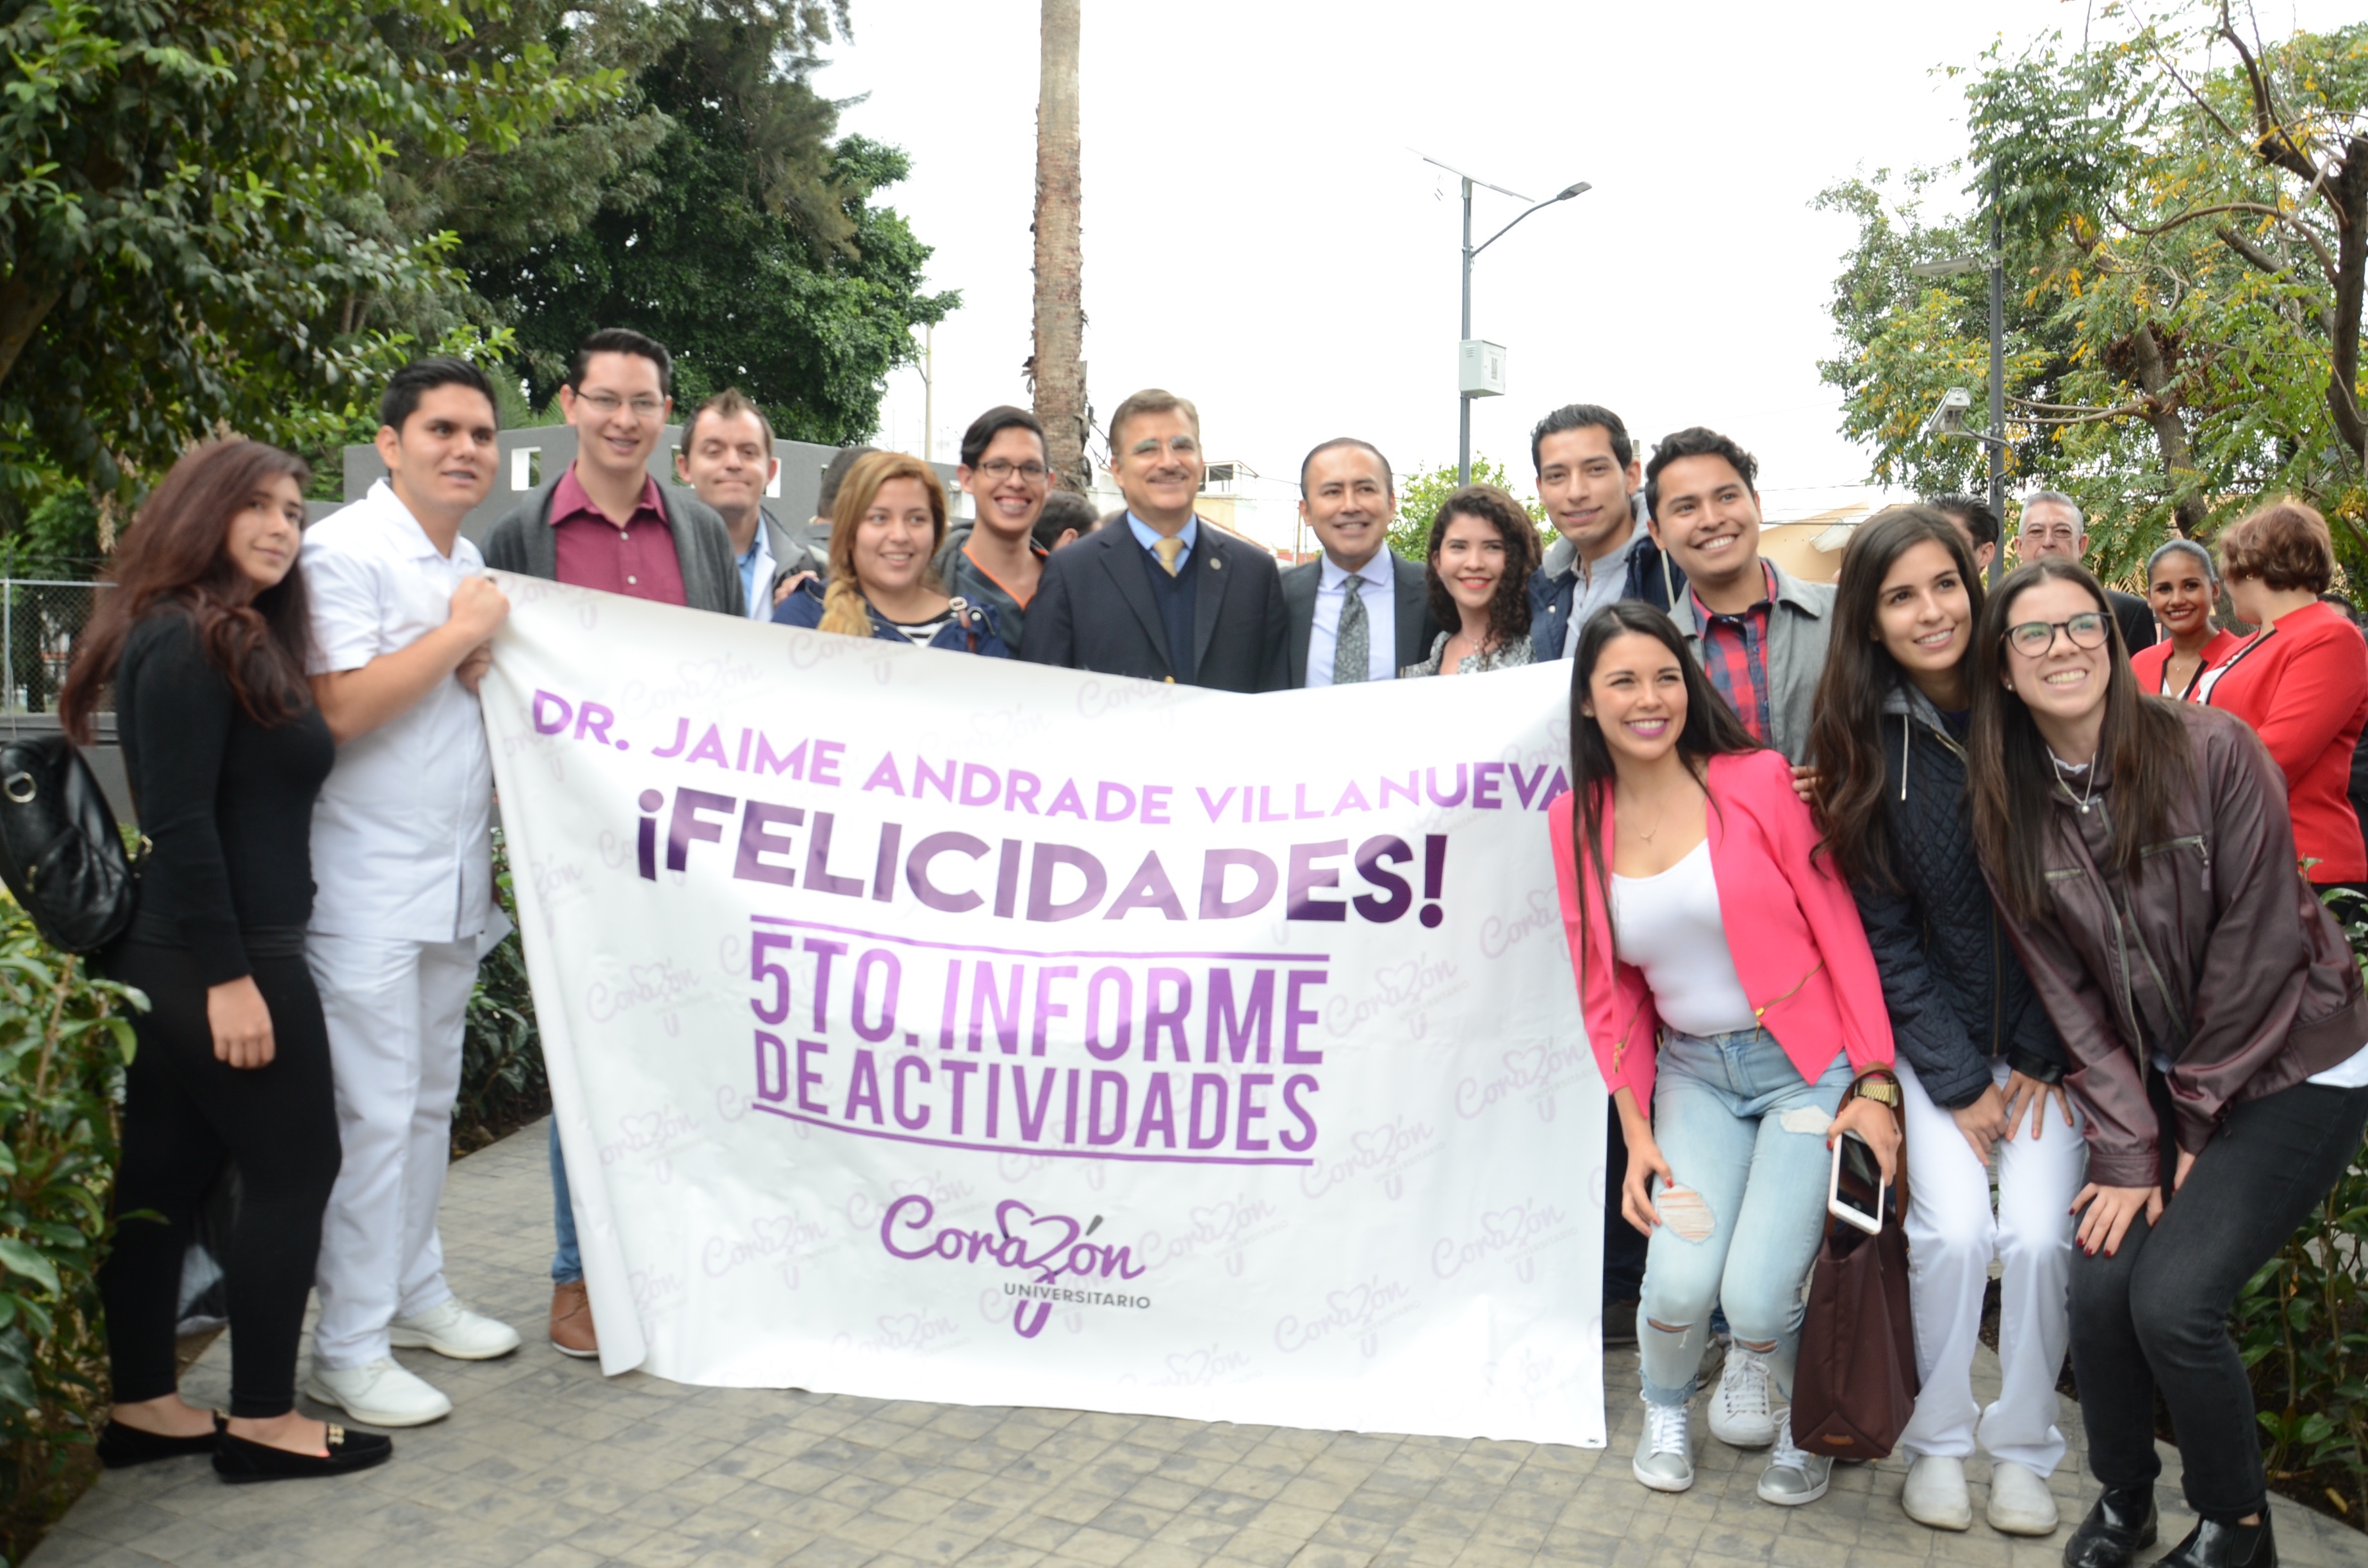 Organización estudiantil posa con las autoridades con una manta de felicitación al Dr. Jaime Andrade